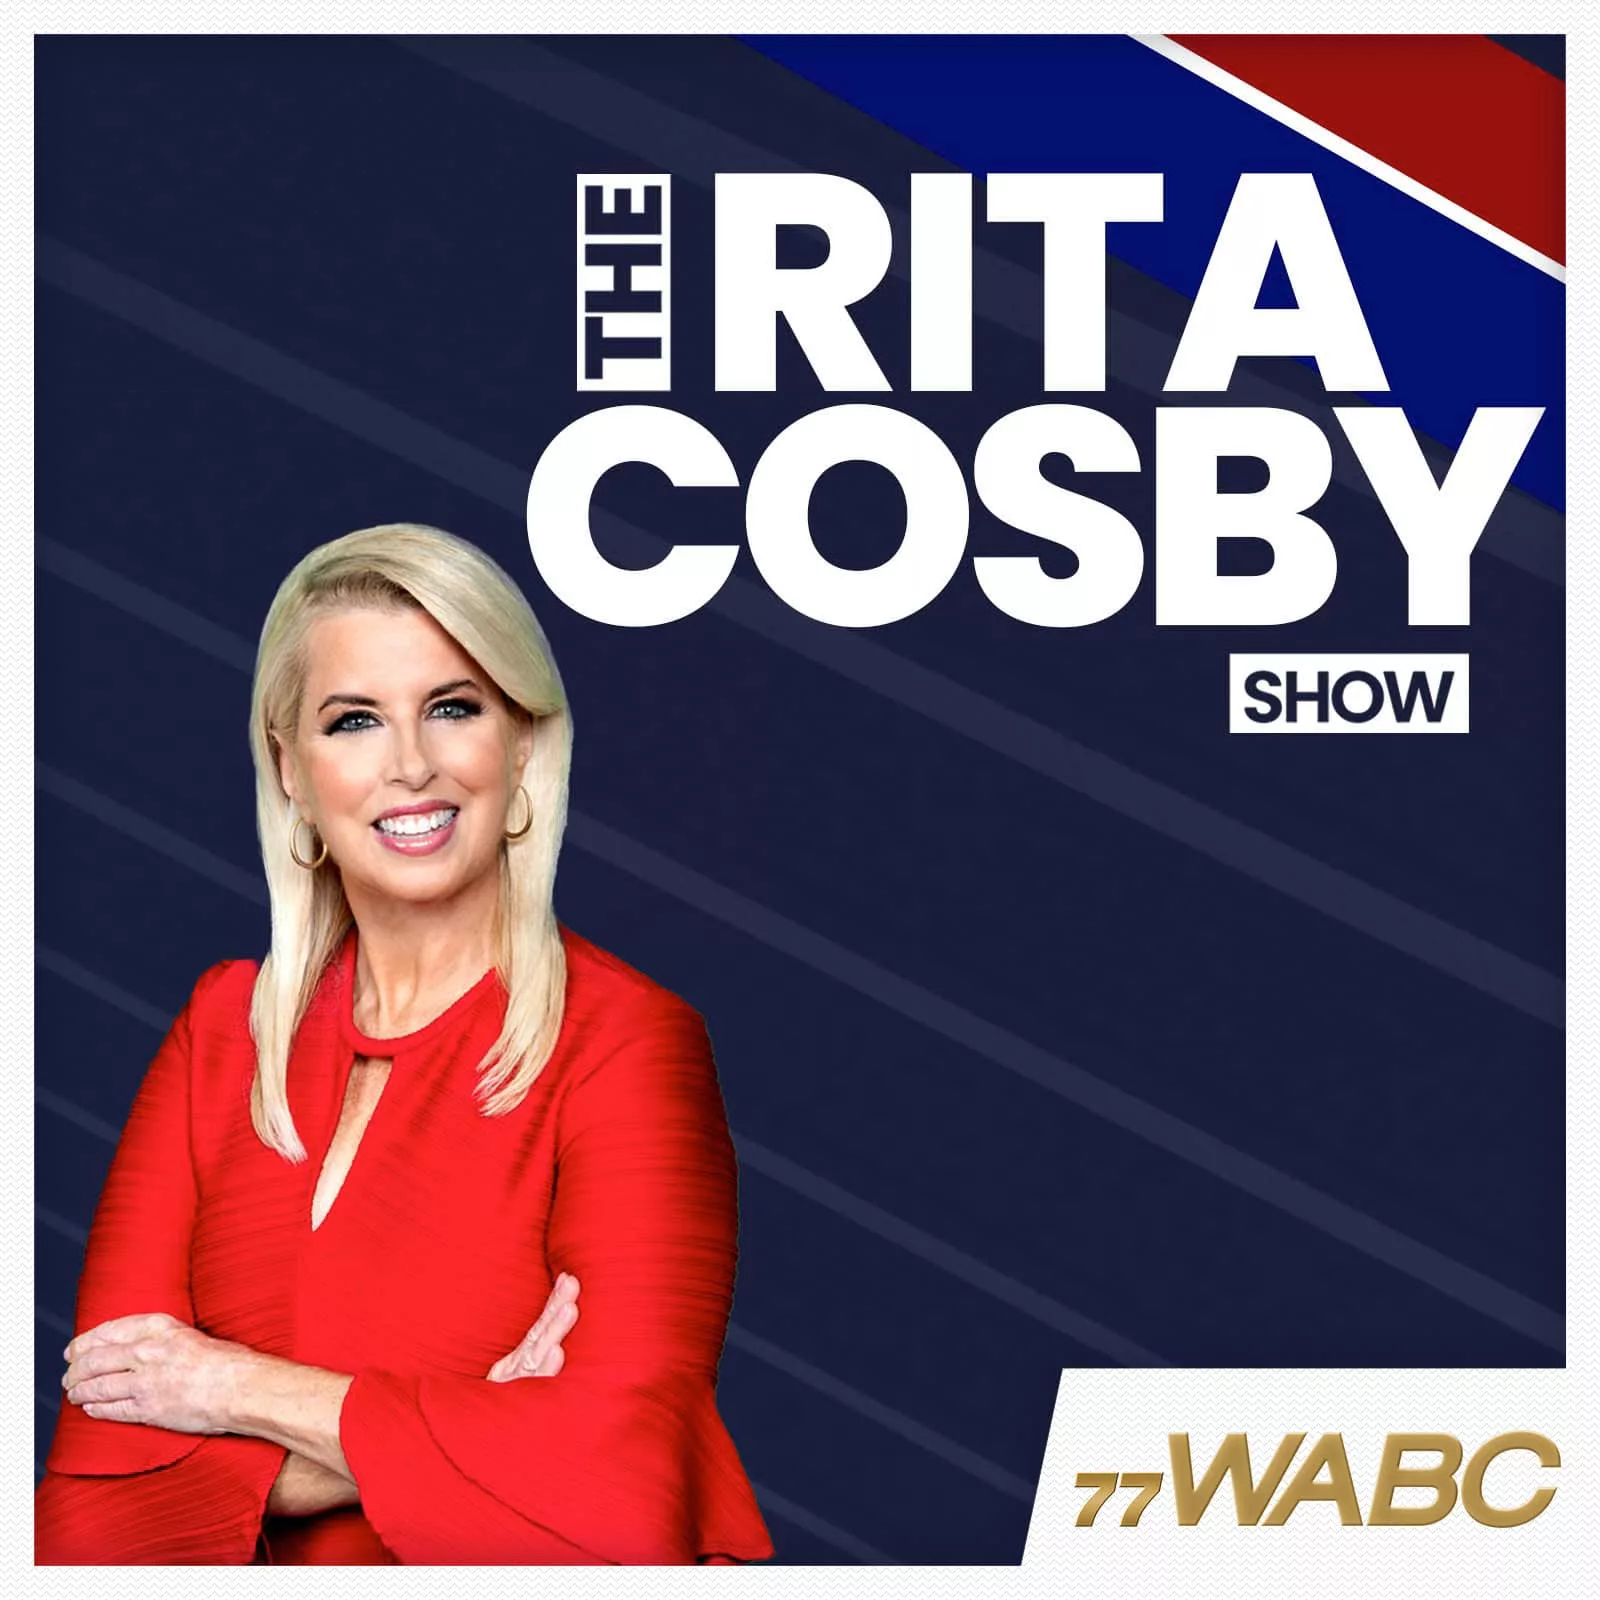 rita-cosby-podcast-new-logo117355